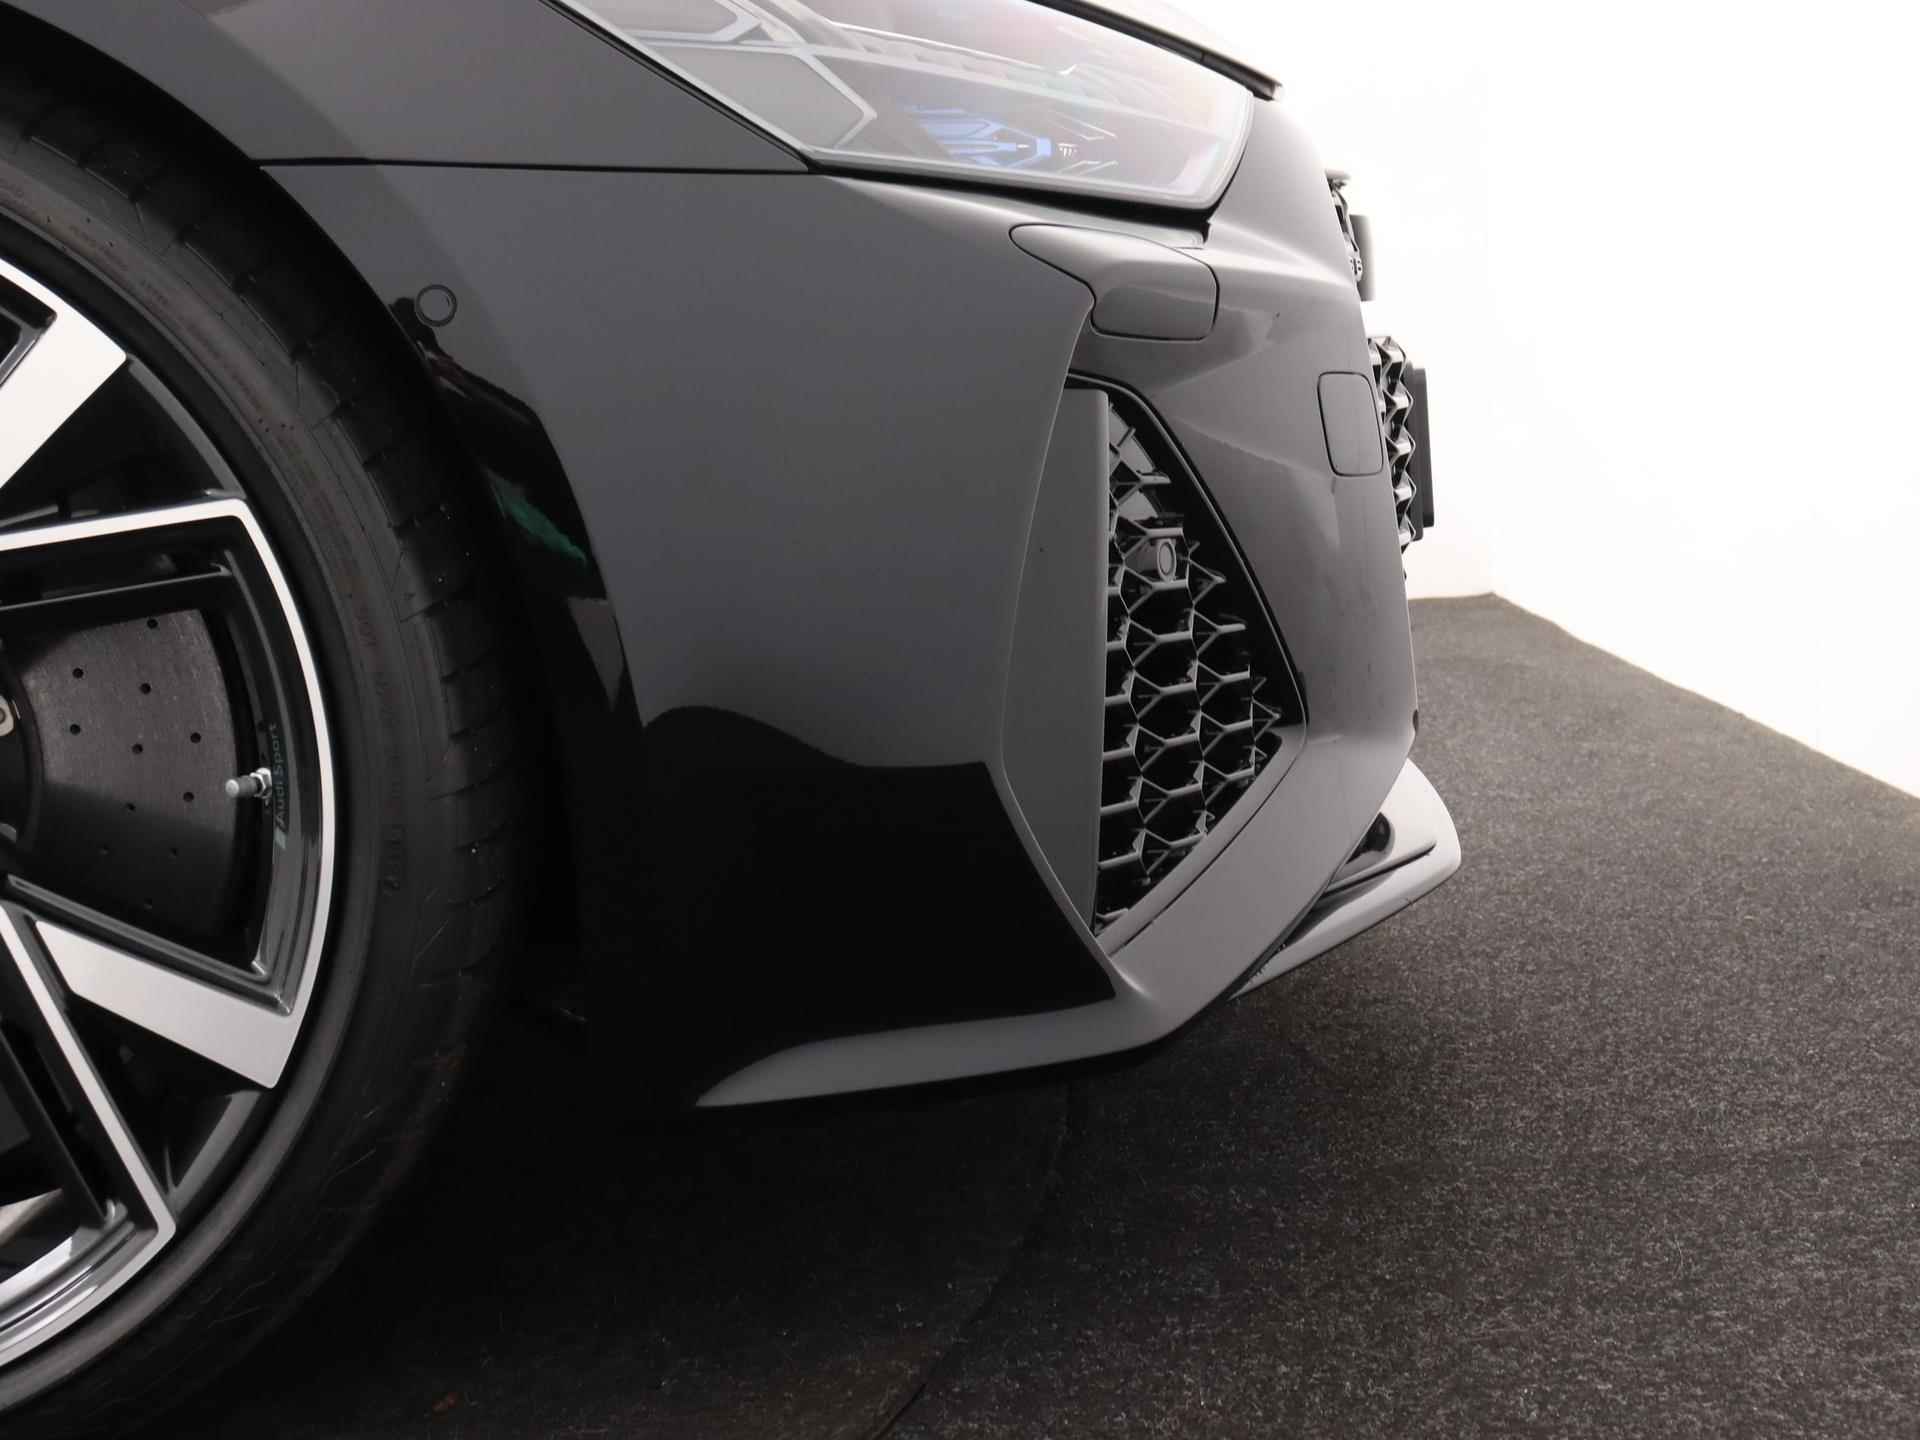 Audi RS 6 Avant TFSI quattro 600 PK | Head-up display | Bang & Olufsen Soundsystem | 22 inch lm velgen | RS Dynamic Pakket Plus | RS Design pakket Rood |Optiekpakket Zwart Plus | Panorama dak | RS Sportuitlaat | Keramische remschijven Rood | RS Sportonderstel Plus | Servosluiting deuren | Nu € 36.129,- ACTIEKORTING! | DIRECT LEVERBAAR! | - 29/35